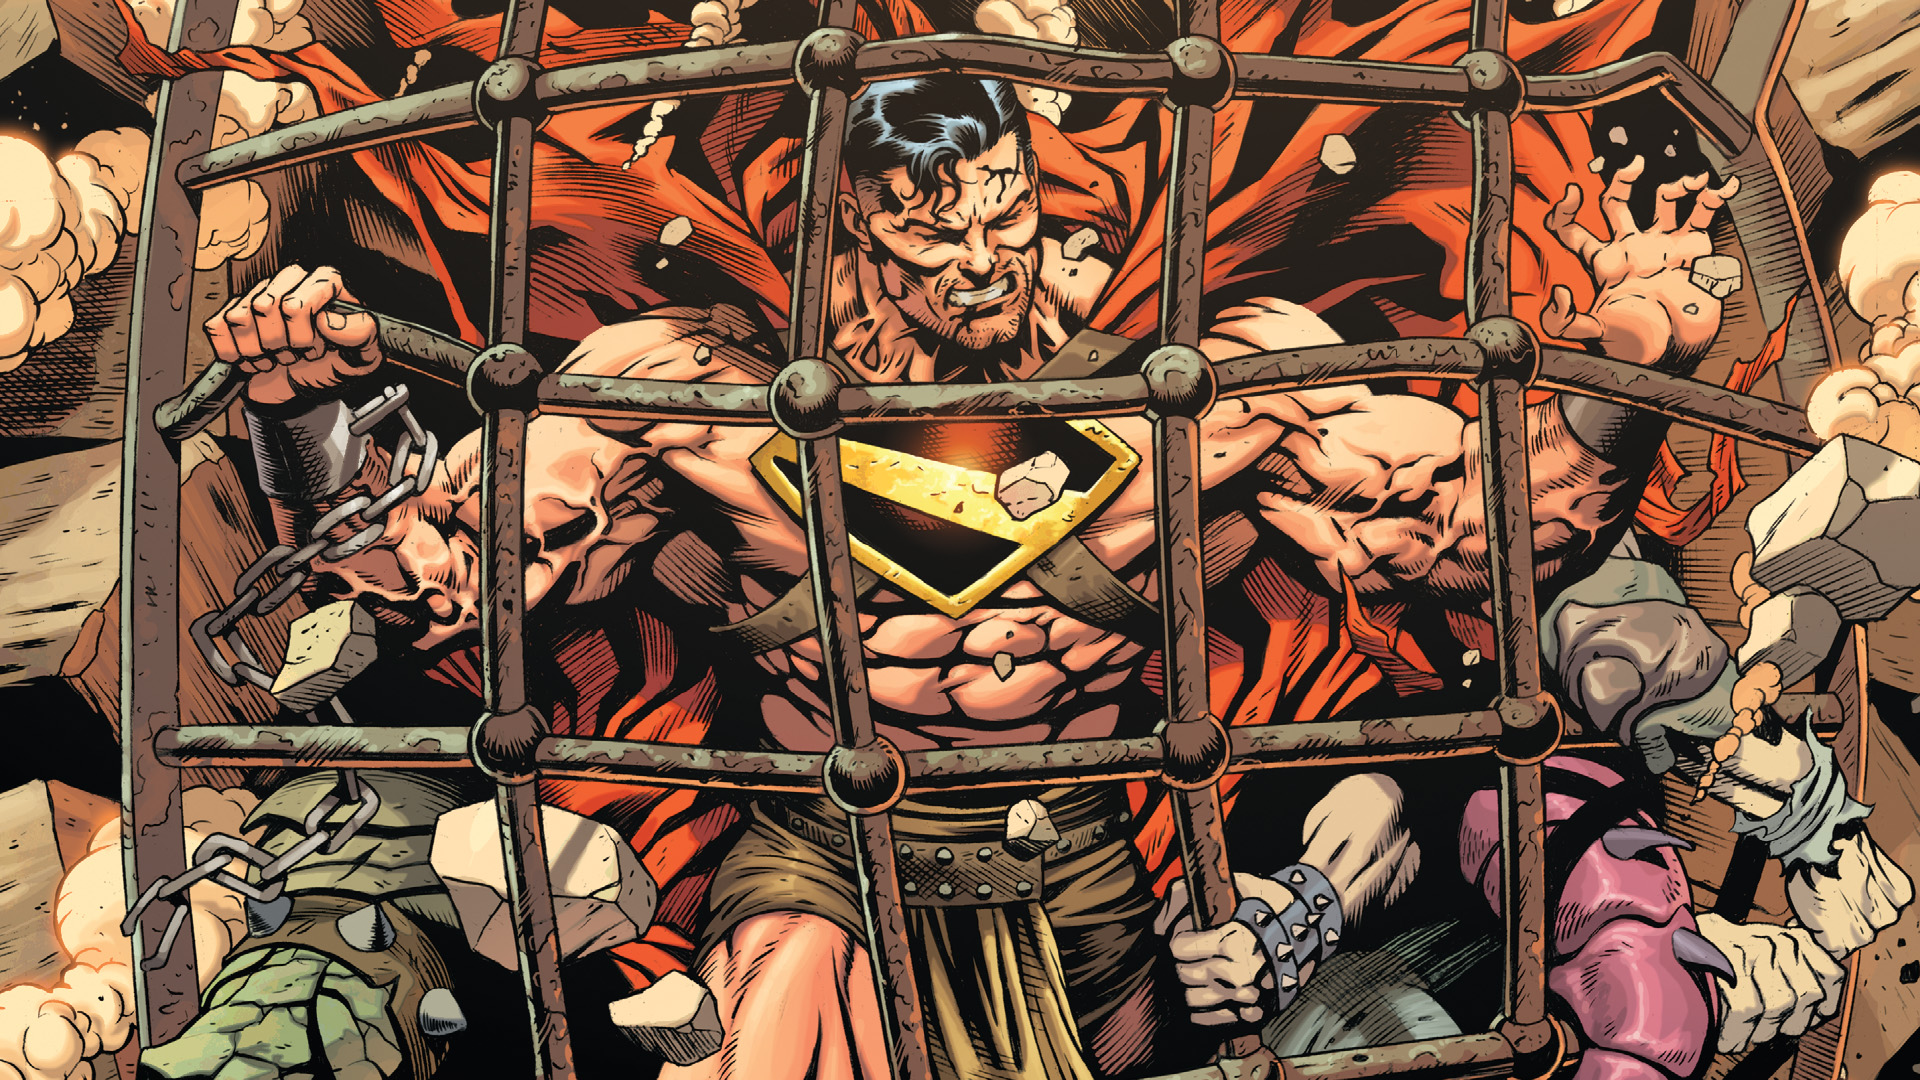 Action Comics #1043 - A Warworld Saga következő fejezete kezdődik! 